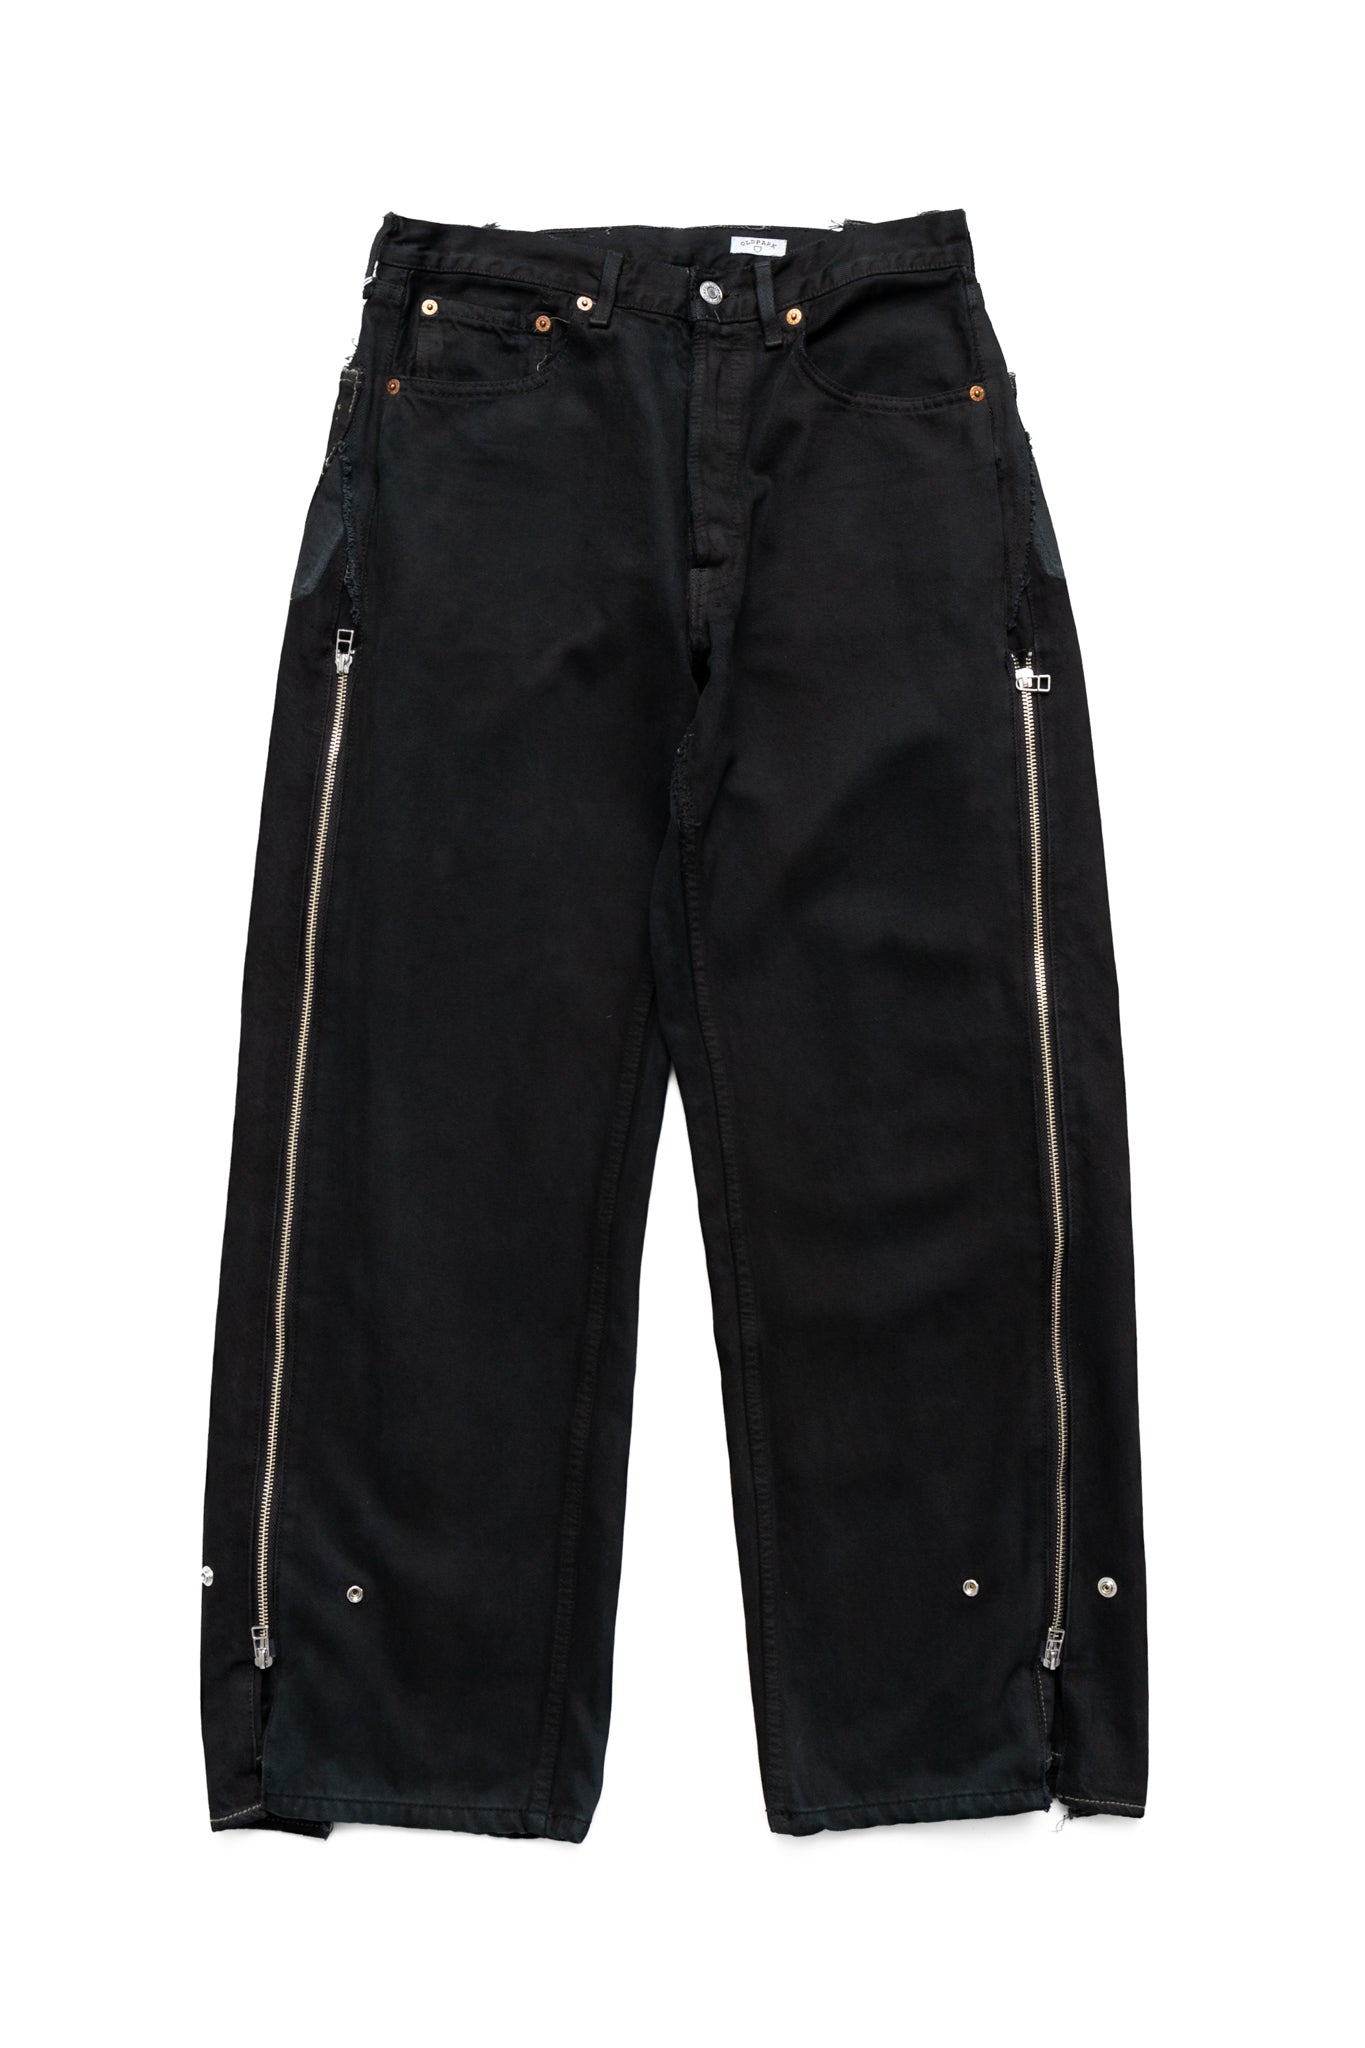 Zip Baggy Jeans Black - S (2)